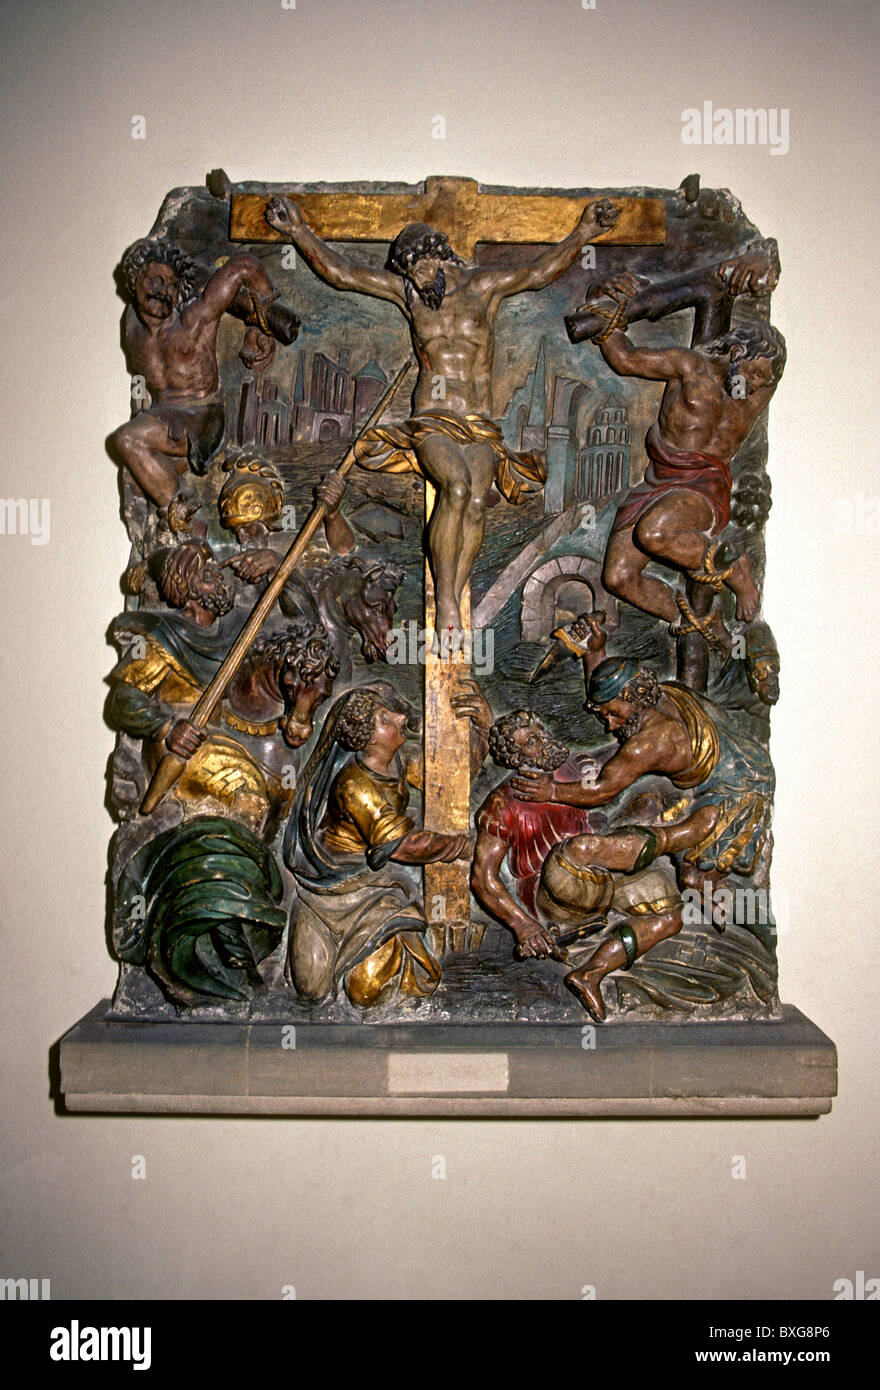 La crucifixion de Jésus, 16ème siècle, la crucifixion de Jésus Christ, du musée historique lorrain, ville de Nancy, Lorraine, France, Europe Banque D'Images